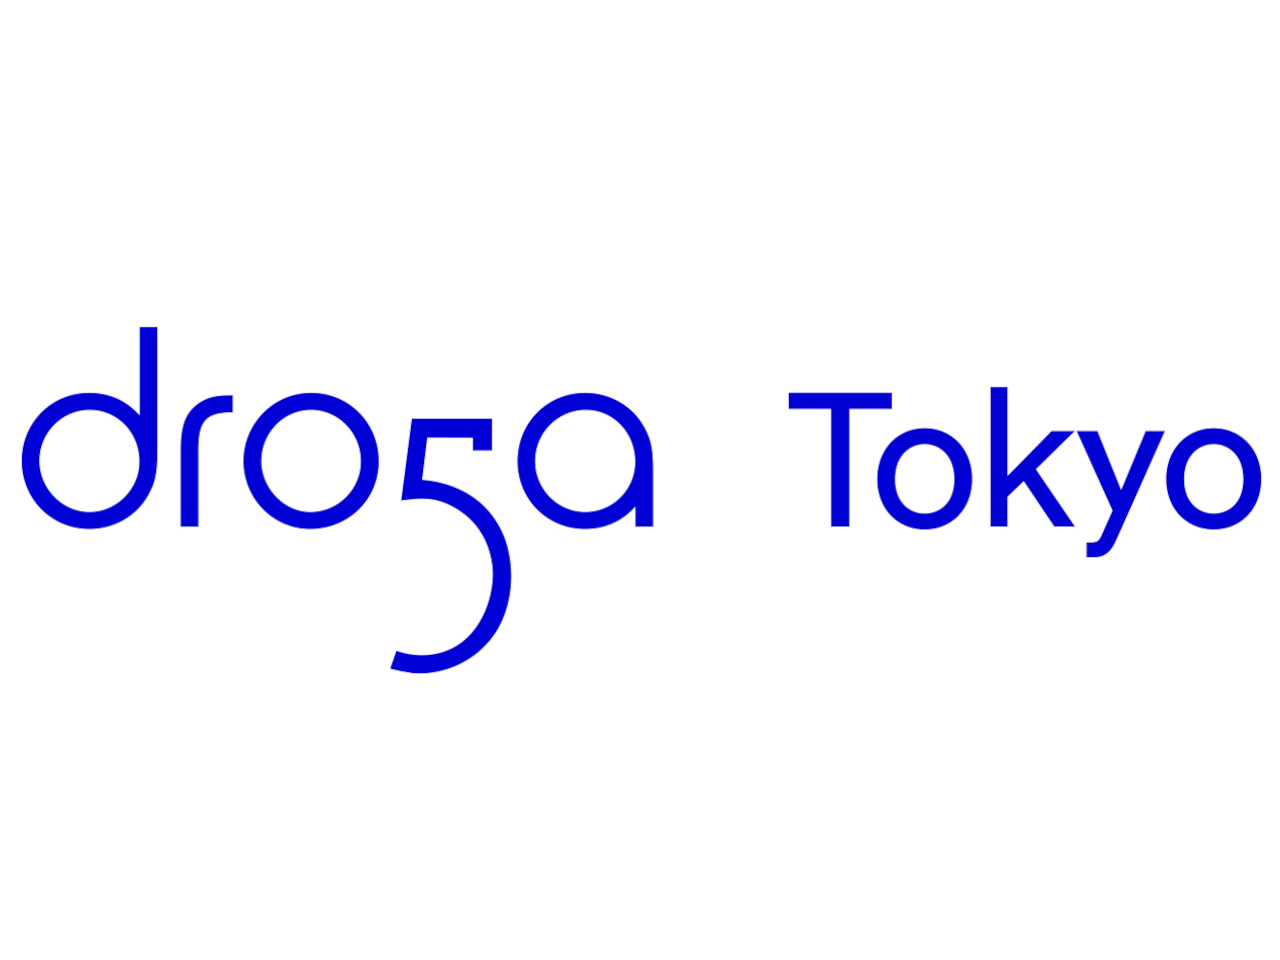 アクセンチュア、クリエイティブエージェンシー「Droga5」の東京オフィスを開設